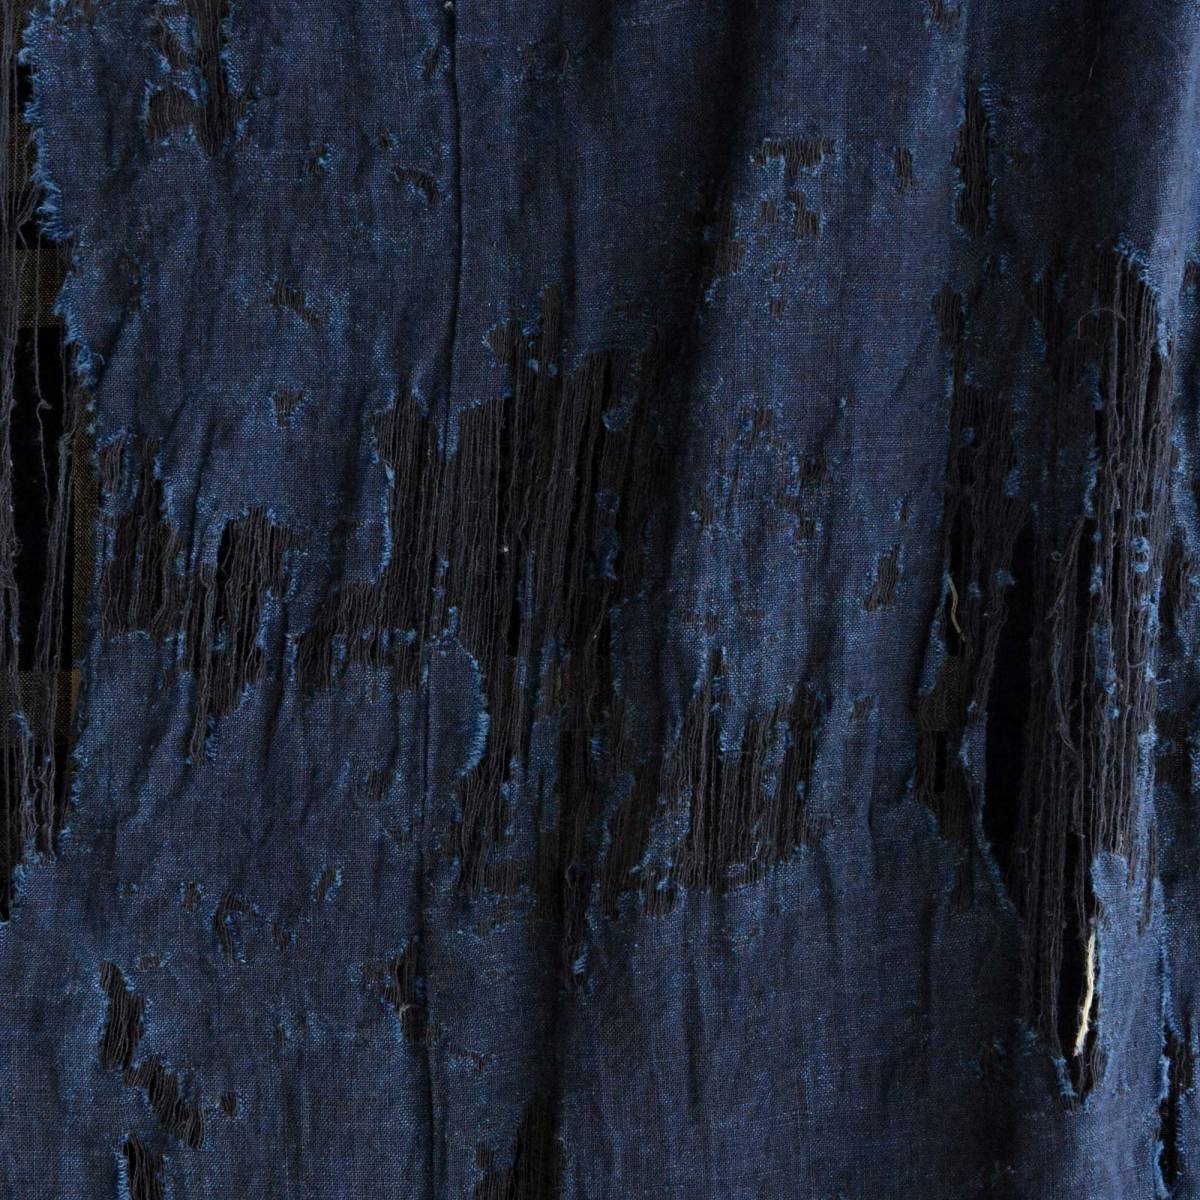 古布 藍染 木綿 布団皮 襤褸 ジャパンヴィンテージ ファブリック テキスタイルJapanese Fabric Cotton Vintage Boro Indigo Futon Cover